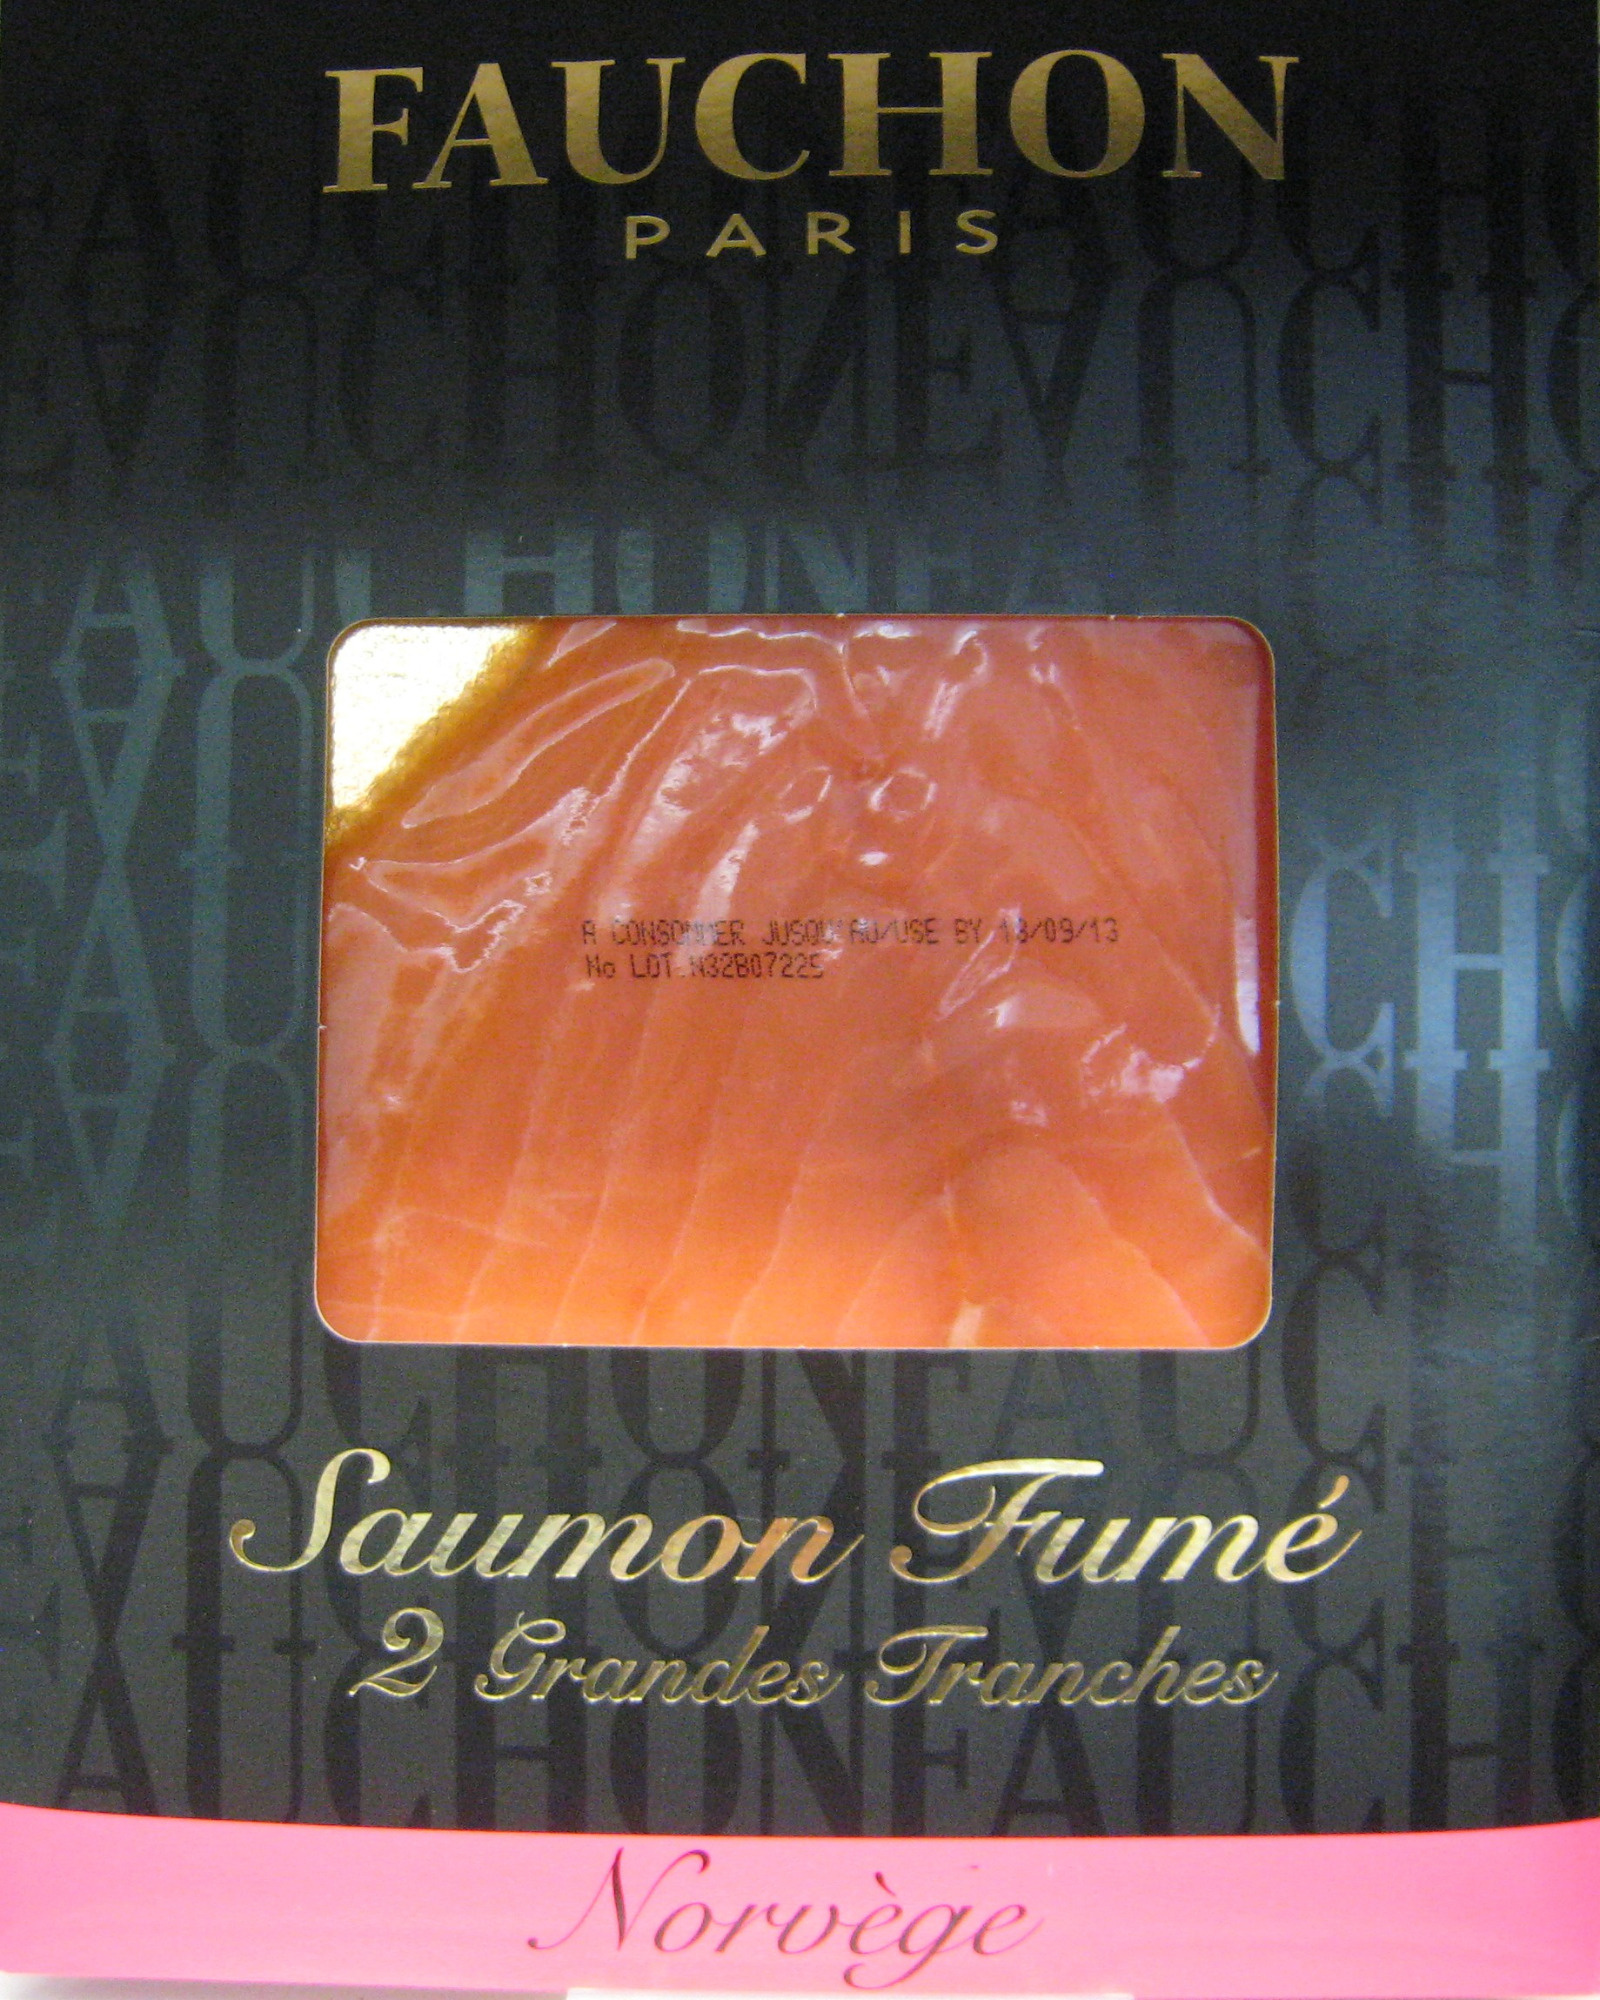 Saumon fumé 2 grandes tranches Norvège Fauchon - Product - fr